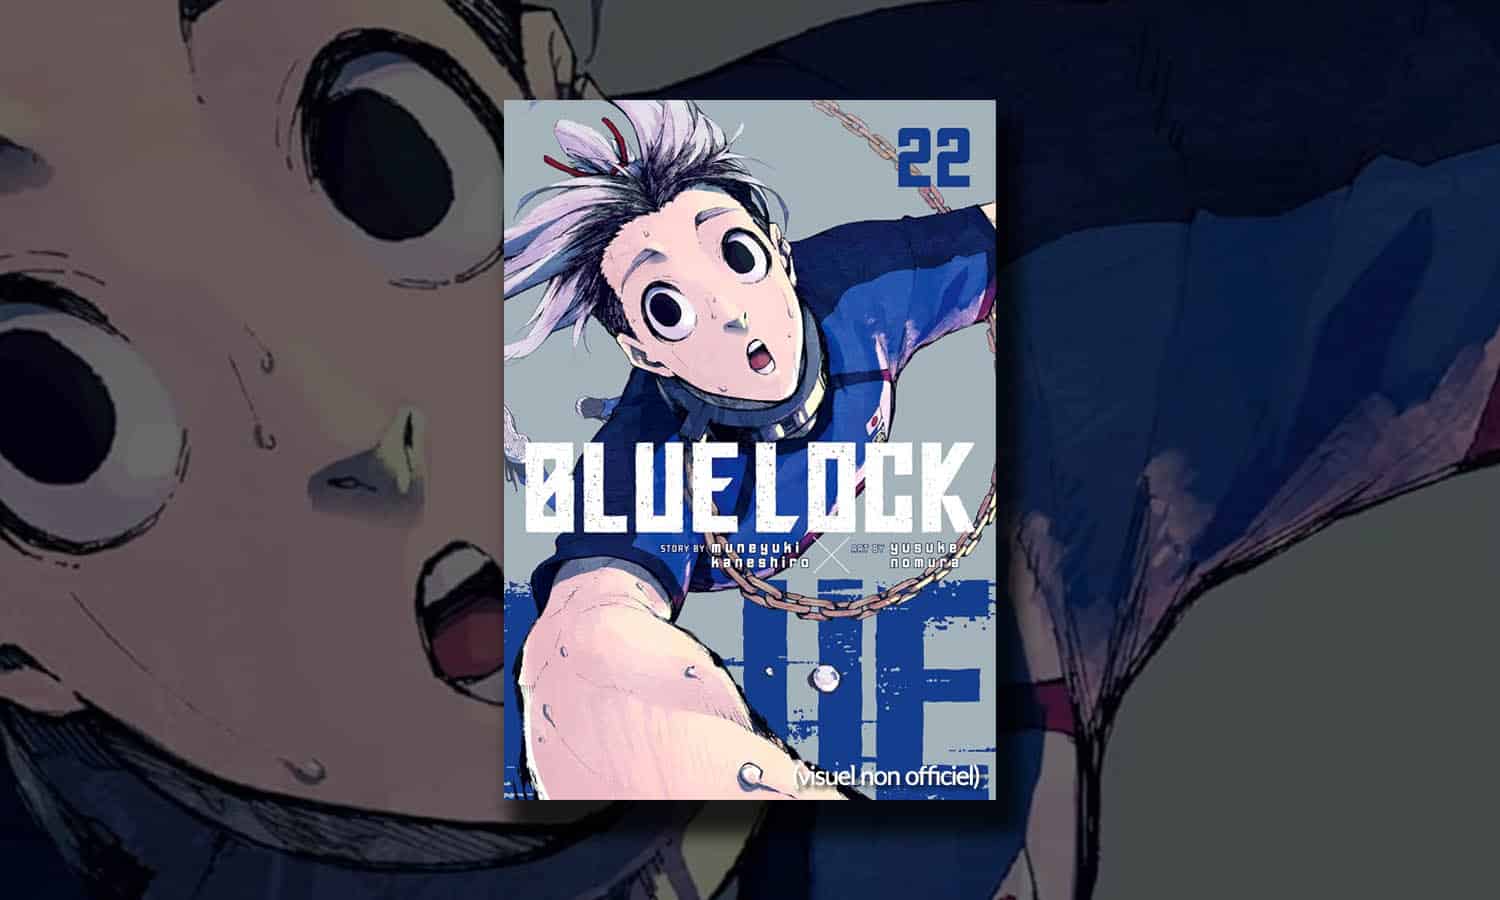 SLIDER Blue Lock Tome 22 Edition limitée visuel provisoire